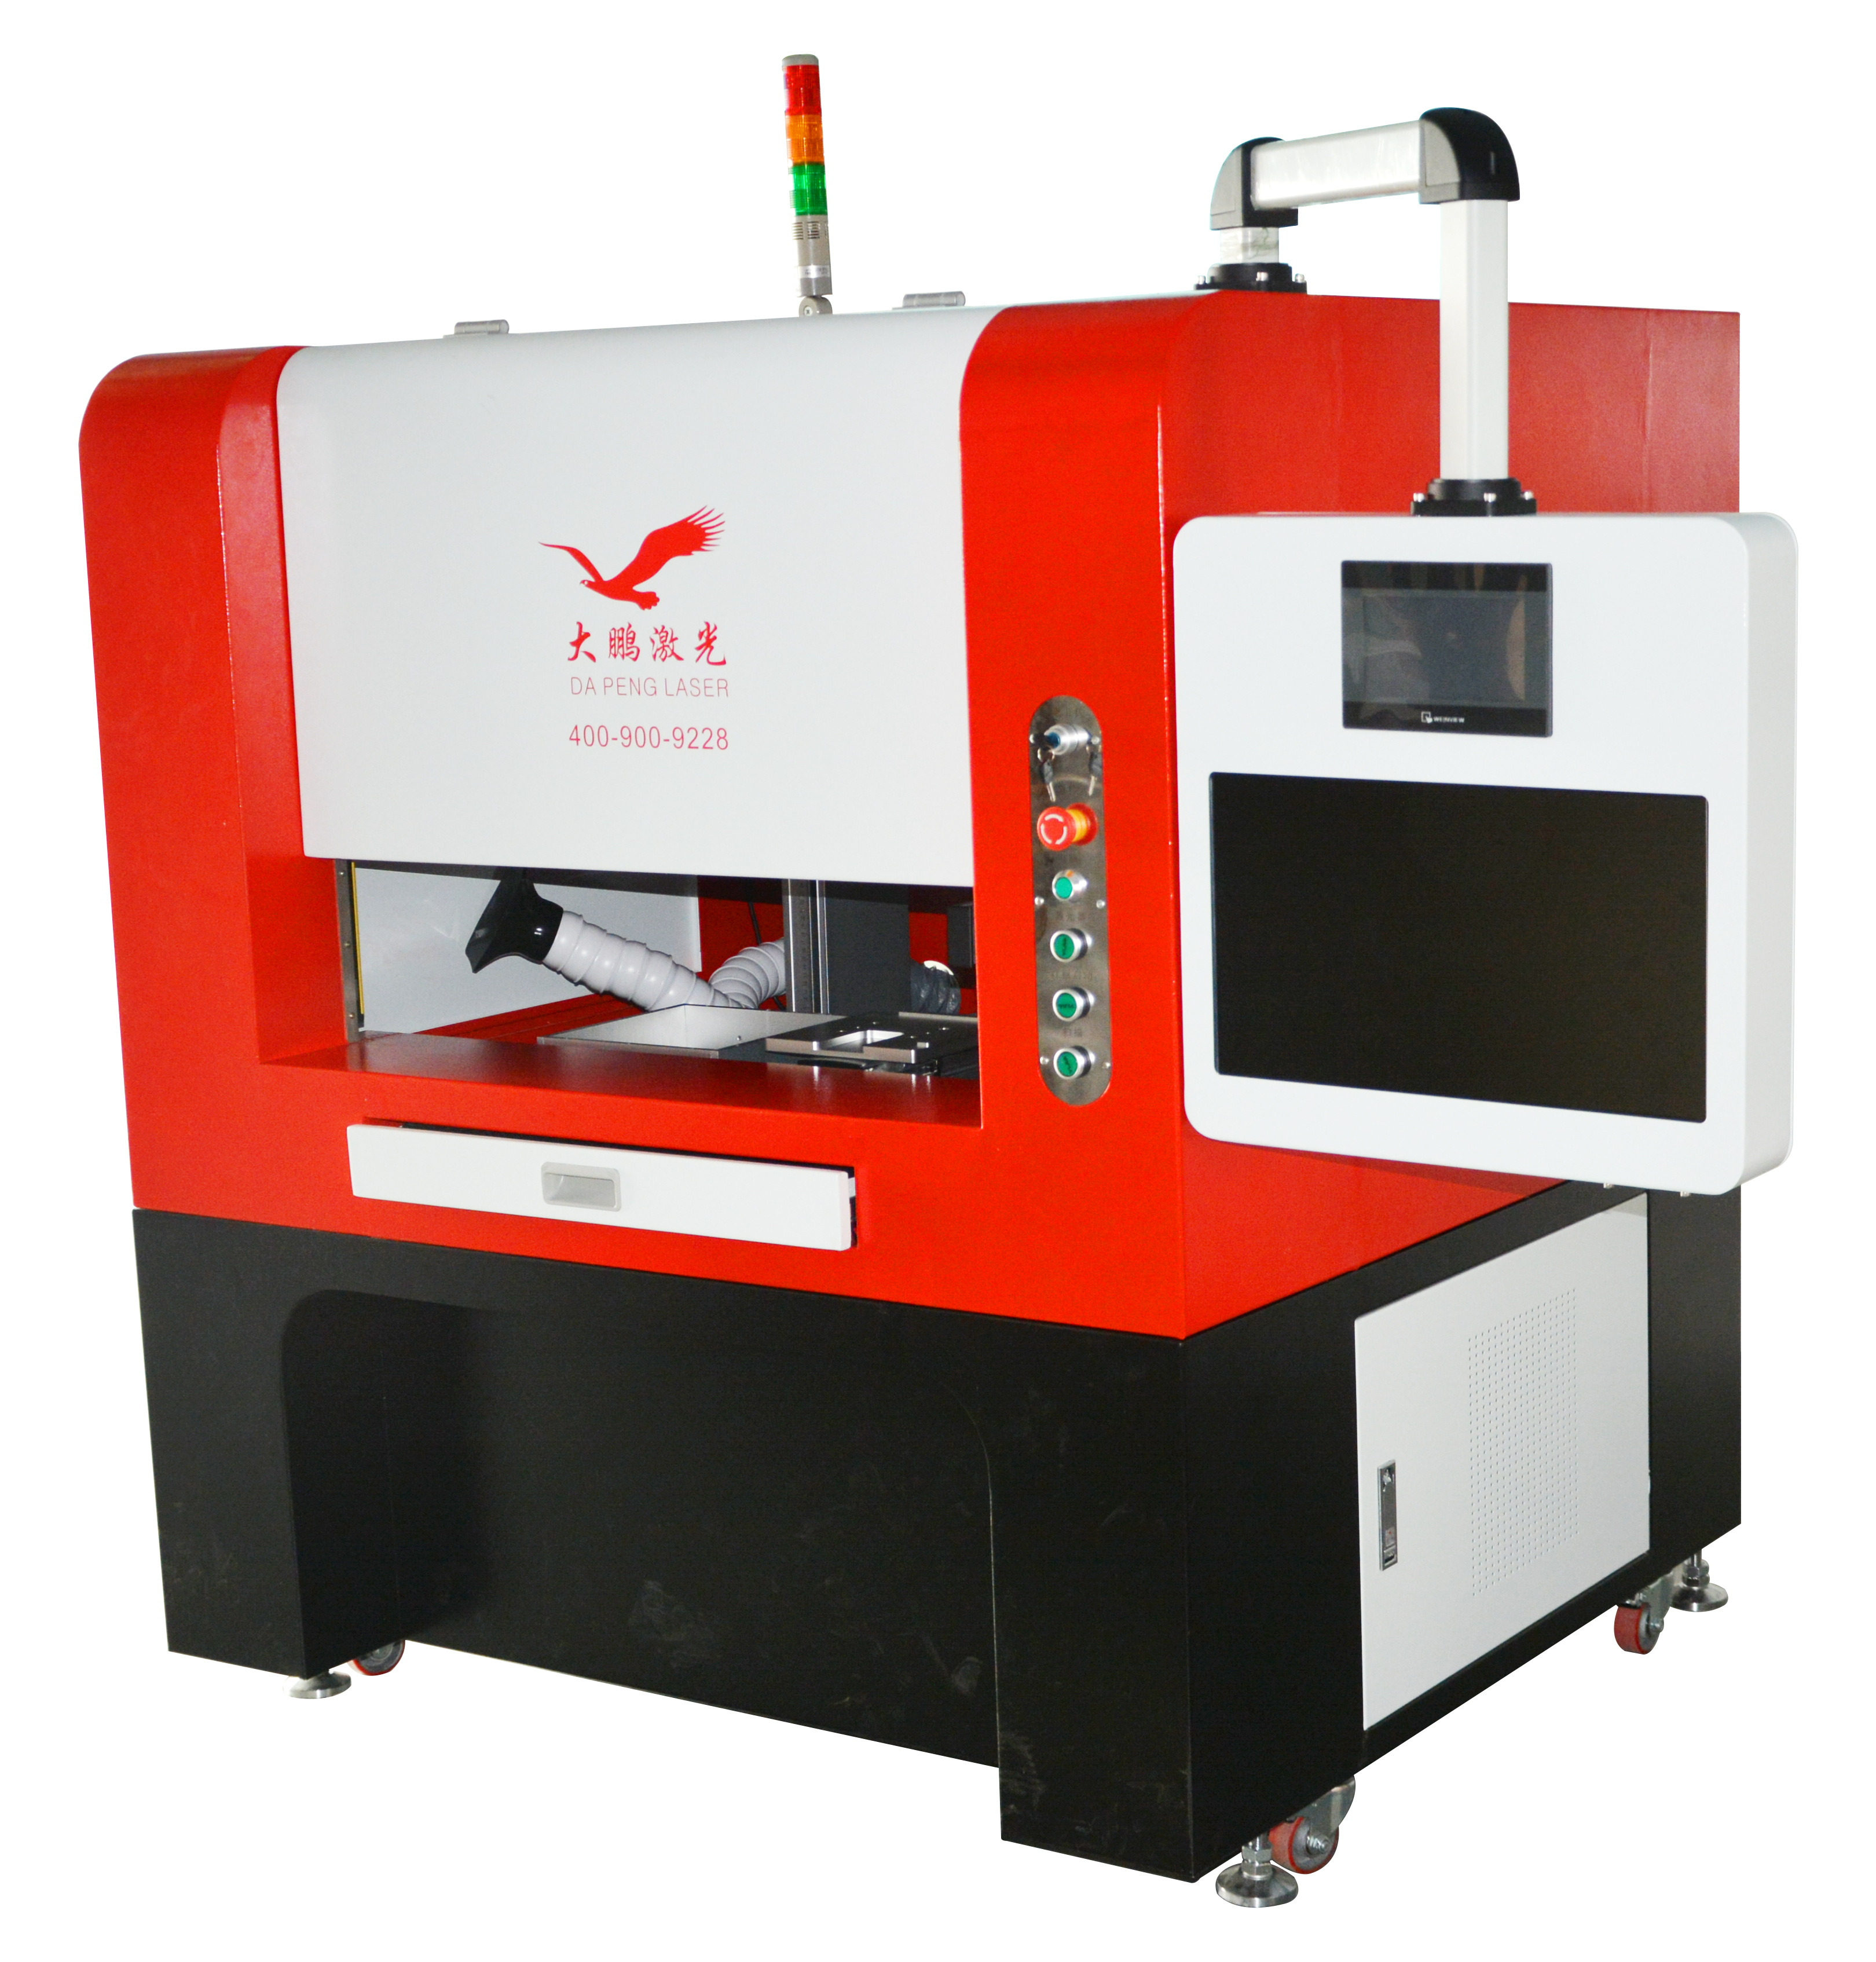 Circuit board (ultraviolet) laser engraving machine